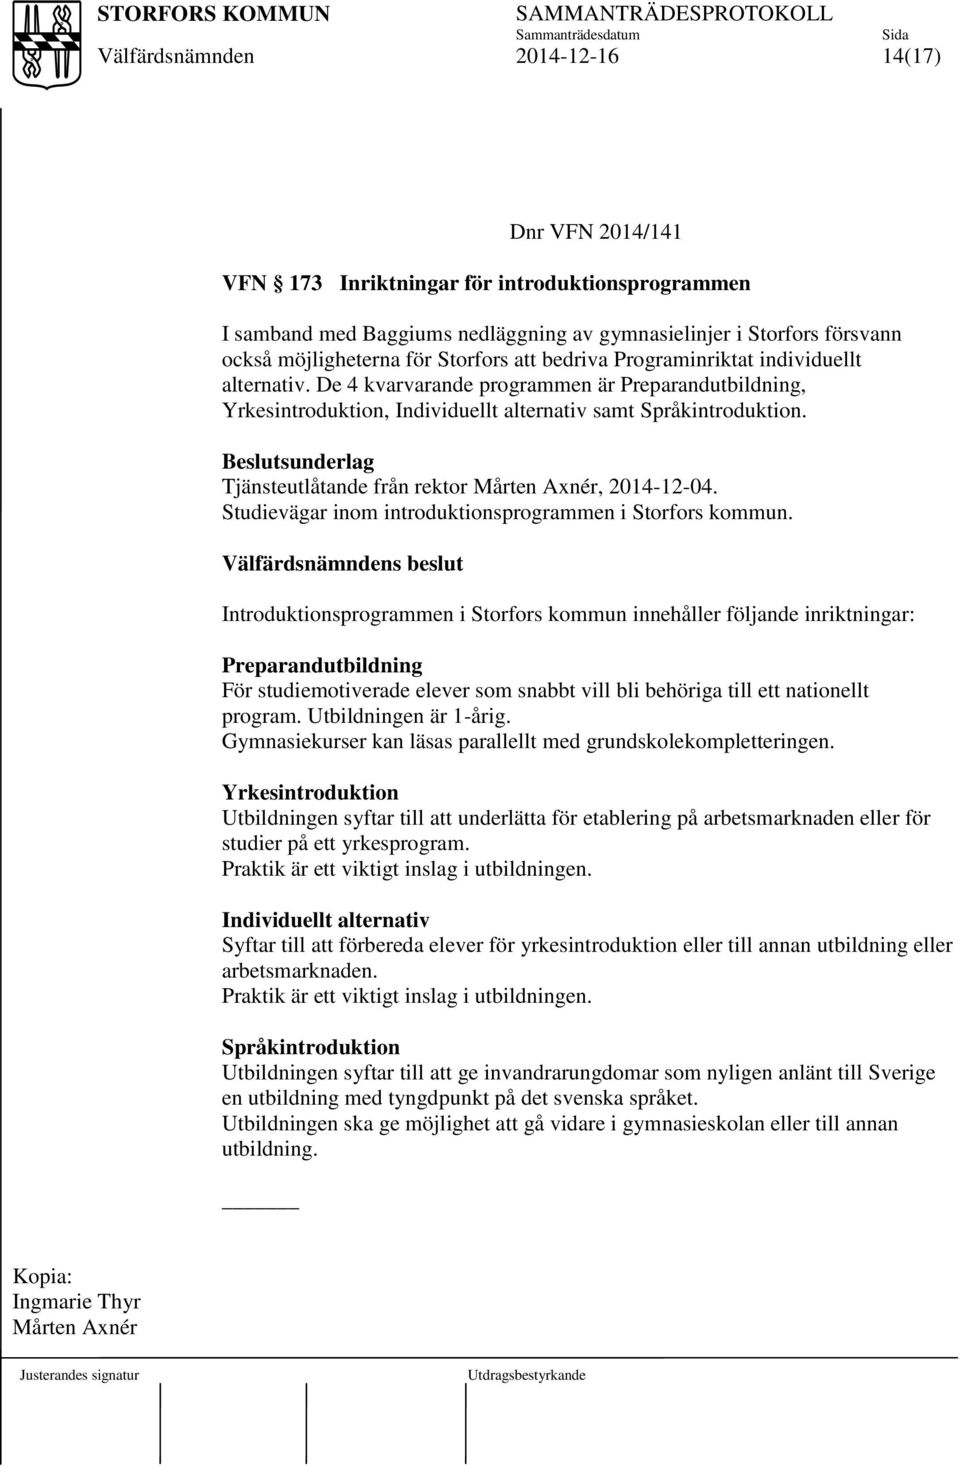 Beslutsunderlag Tjänsteutlåtande från rektor Mårten Axnér, 2014-12-04. Studievägar inom introduktionsprogrammen i Storfors kommun.